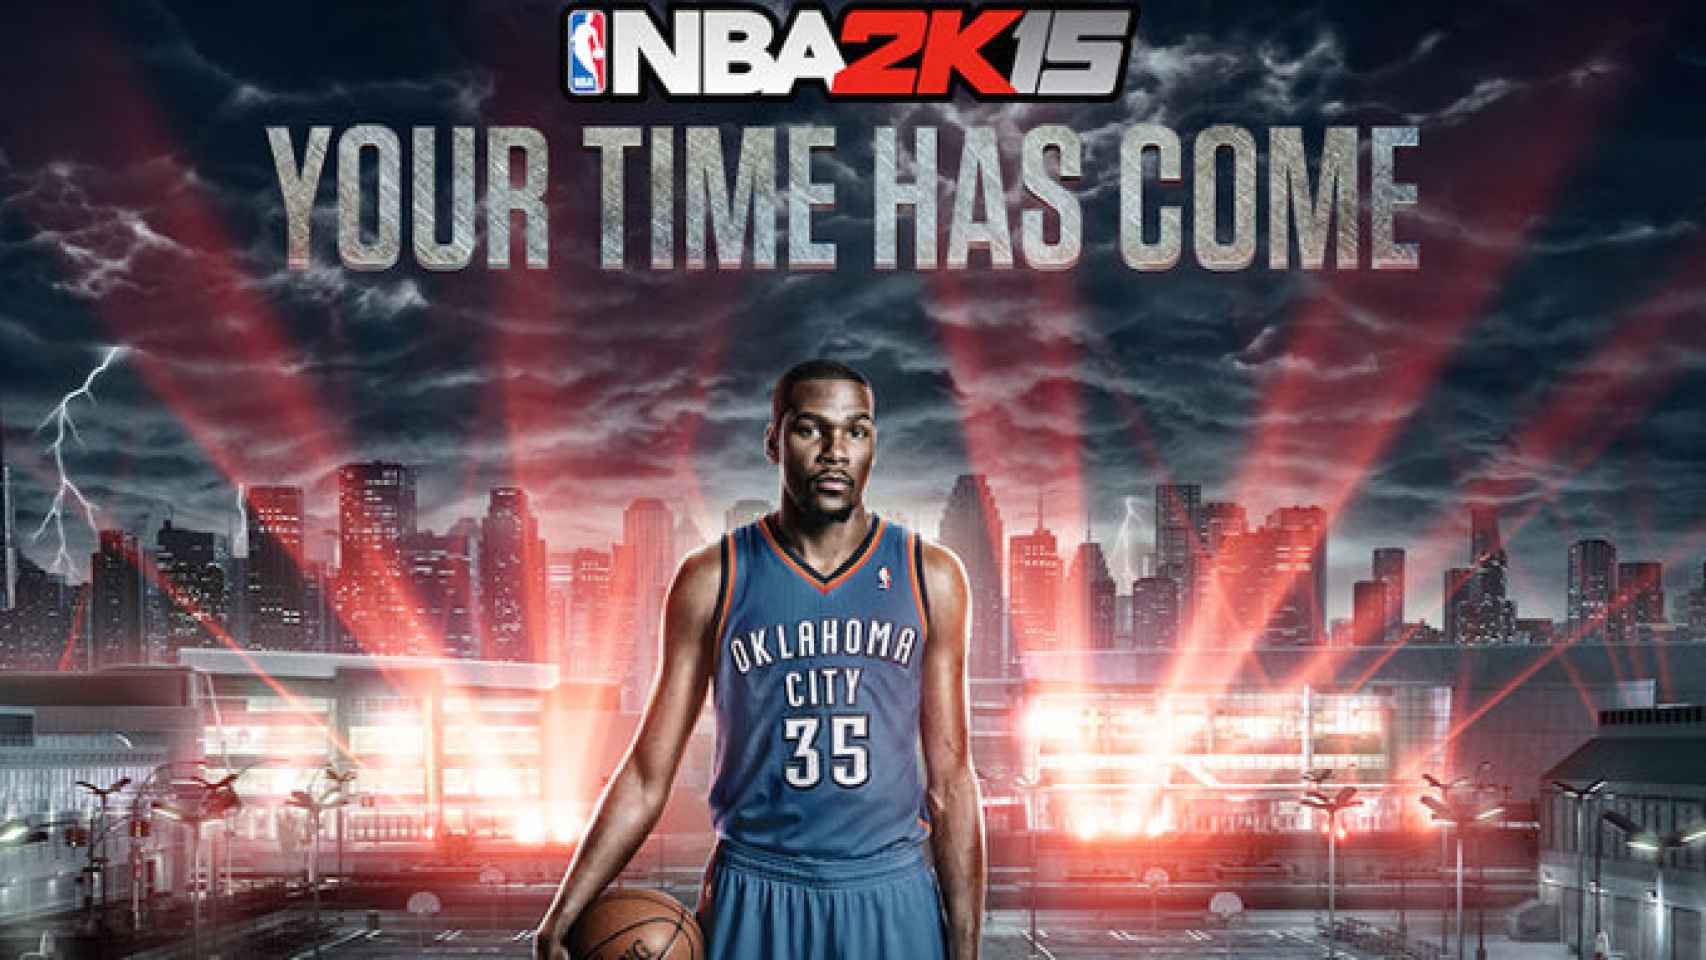 NBA 2K15, el juego de basket por excelencia llega a Android